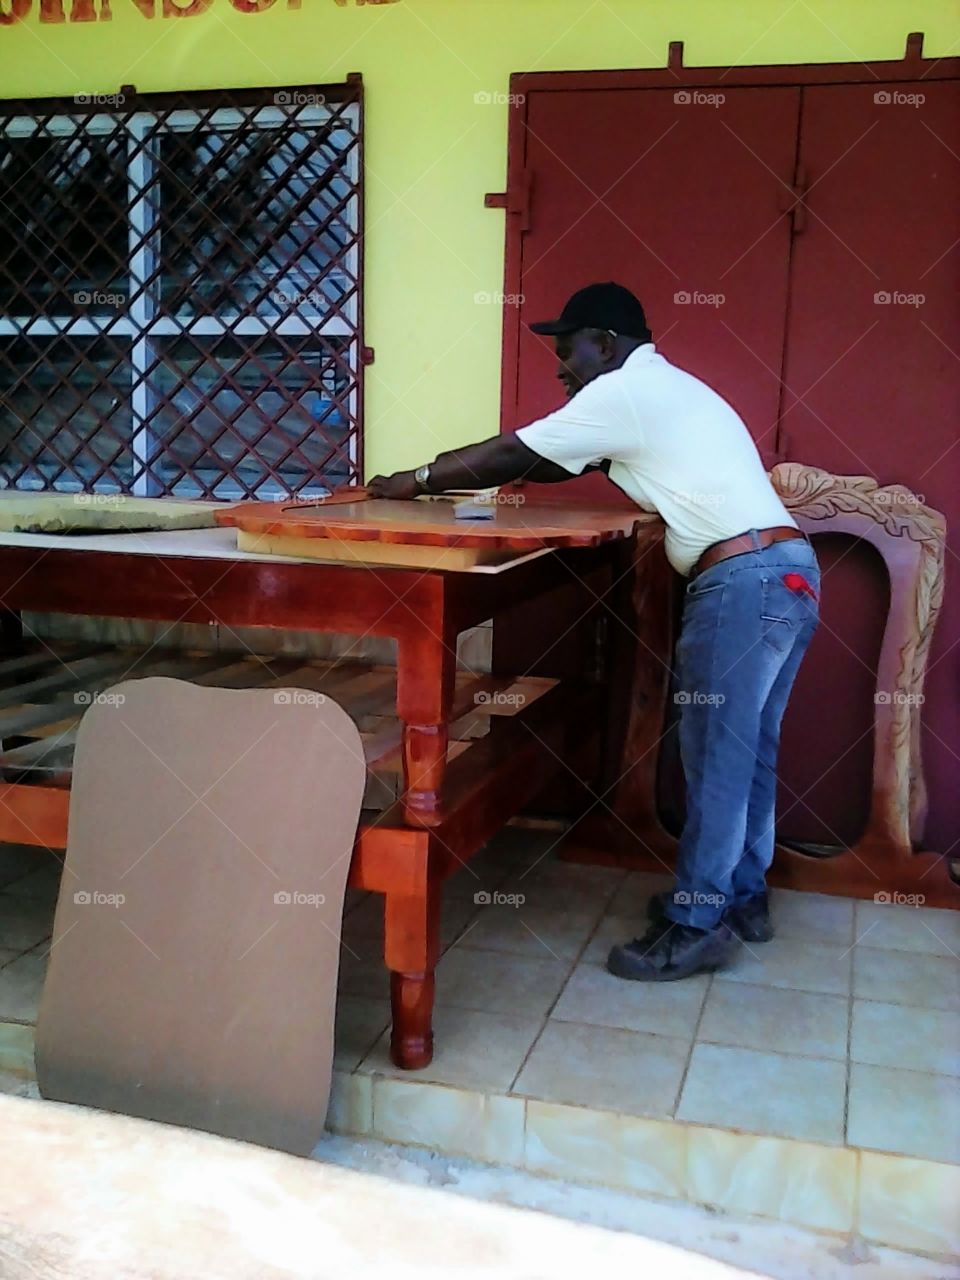 Making Furniture